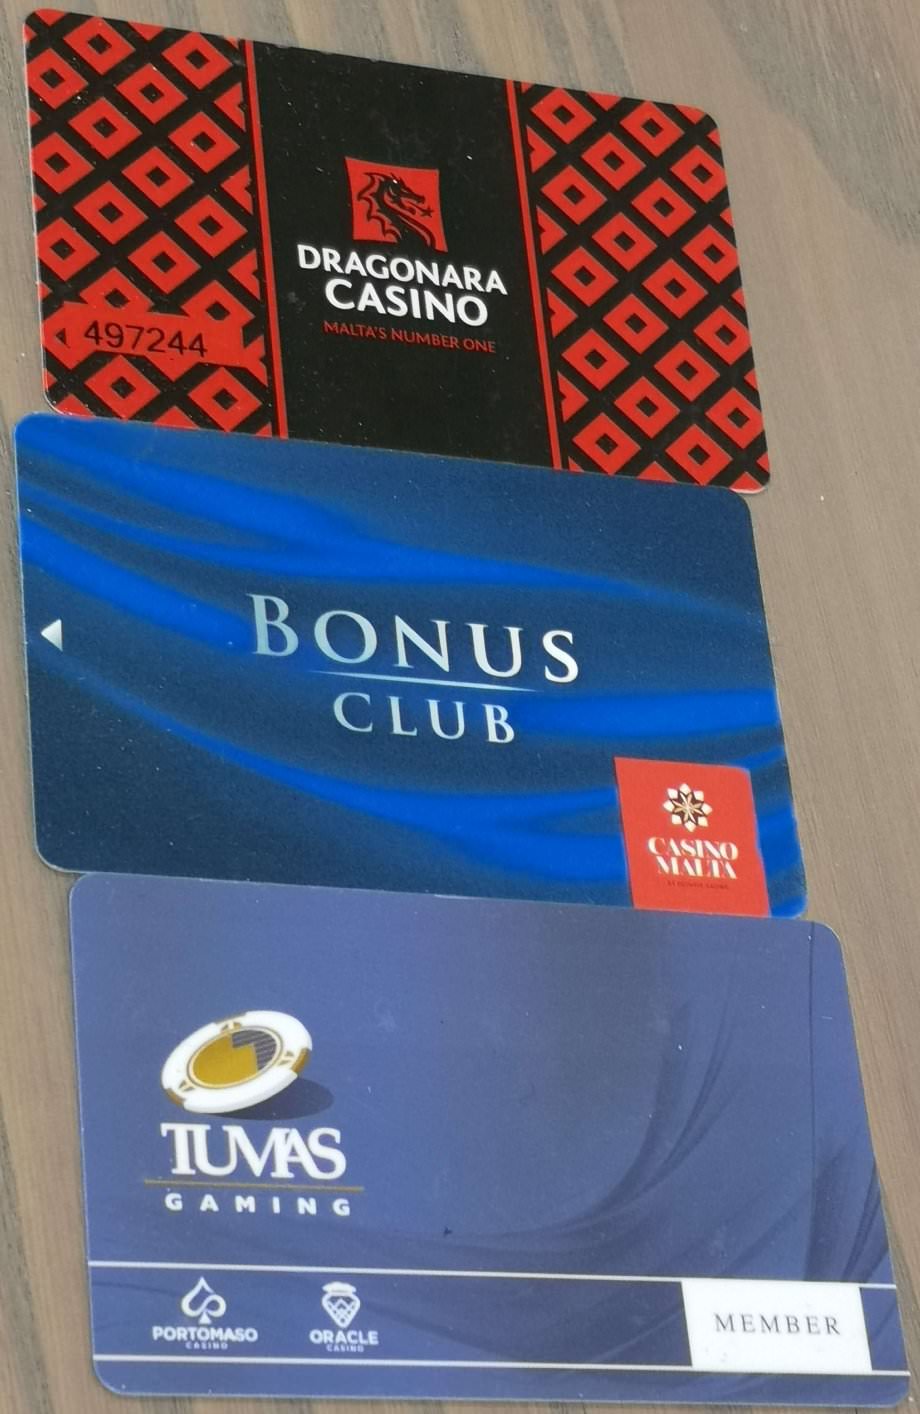  Die drei Casinokarten, die wir erhalten haben